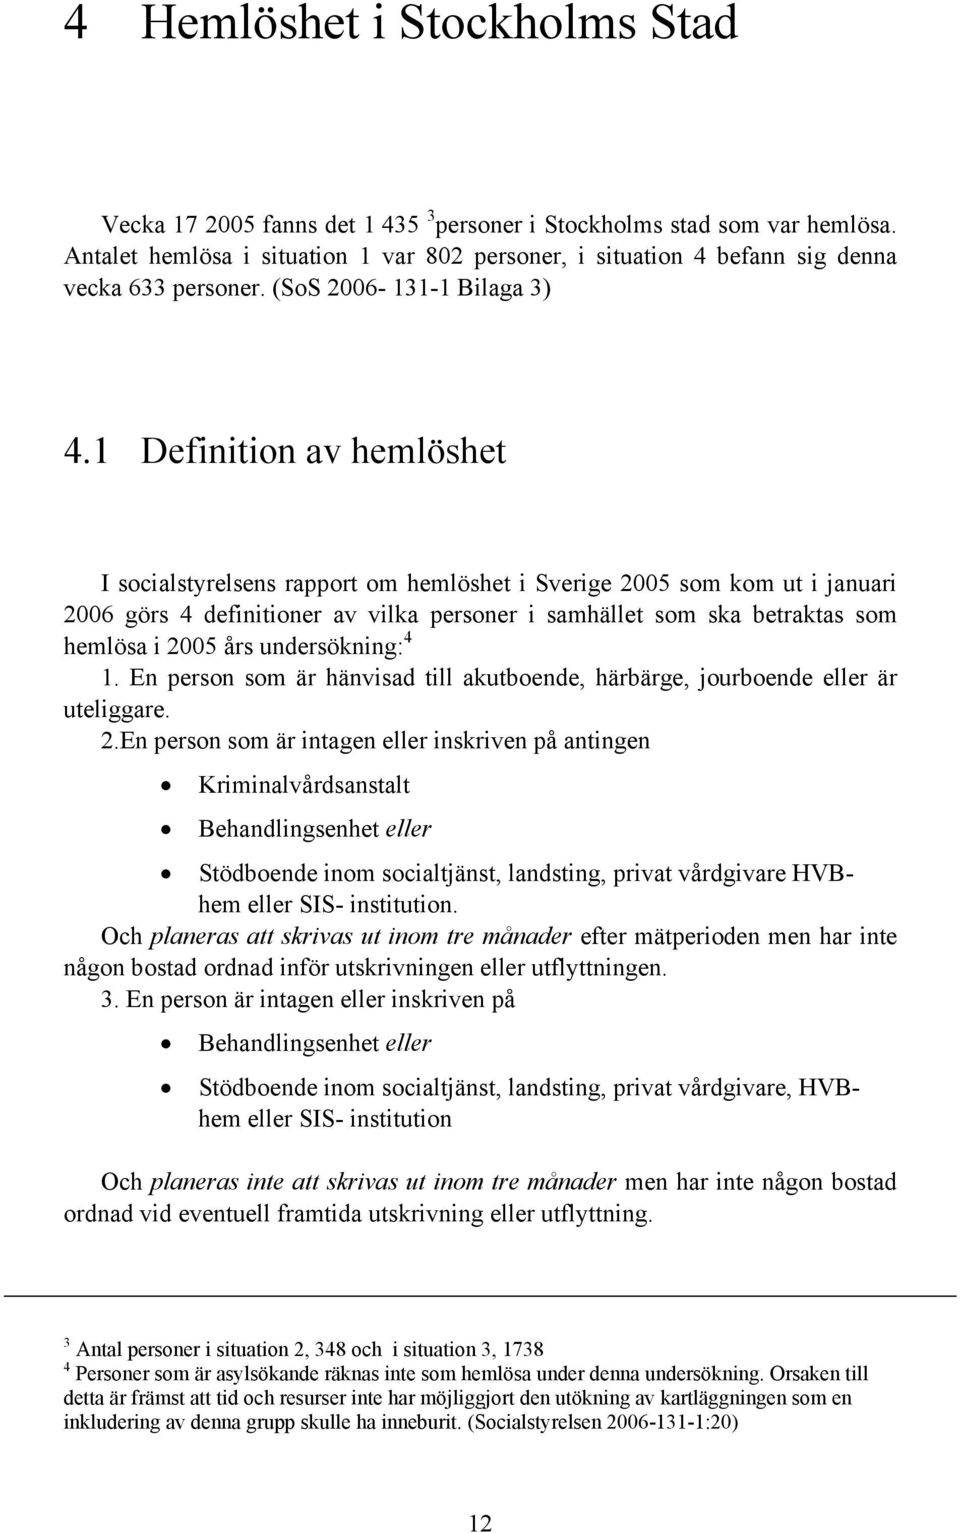 1 Definition av hemlöshet I socialstyrelsens rapport om hemlöshet i Sverige 2005 som kom ut i januari 2006 görs 4 definitioner av vilka personer i samhället som ska betraktas som hemlösa i 2005 års